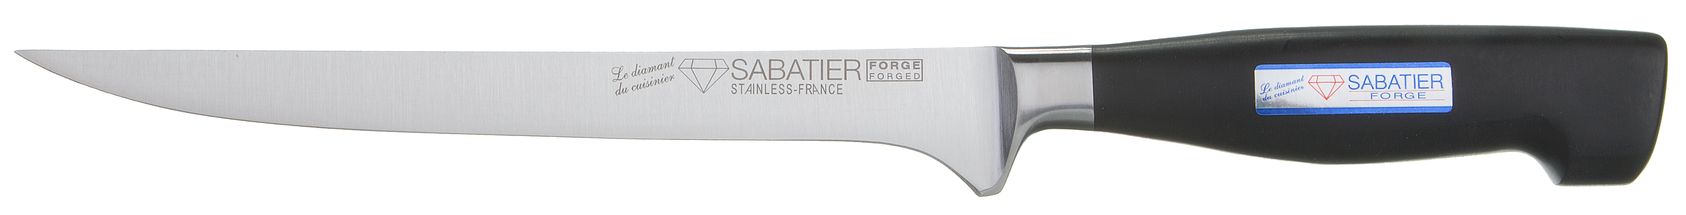 
Diamond Sabatier Filleting Knife Forge 18 cm